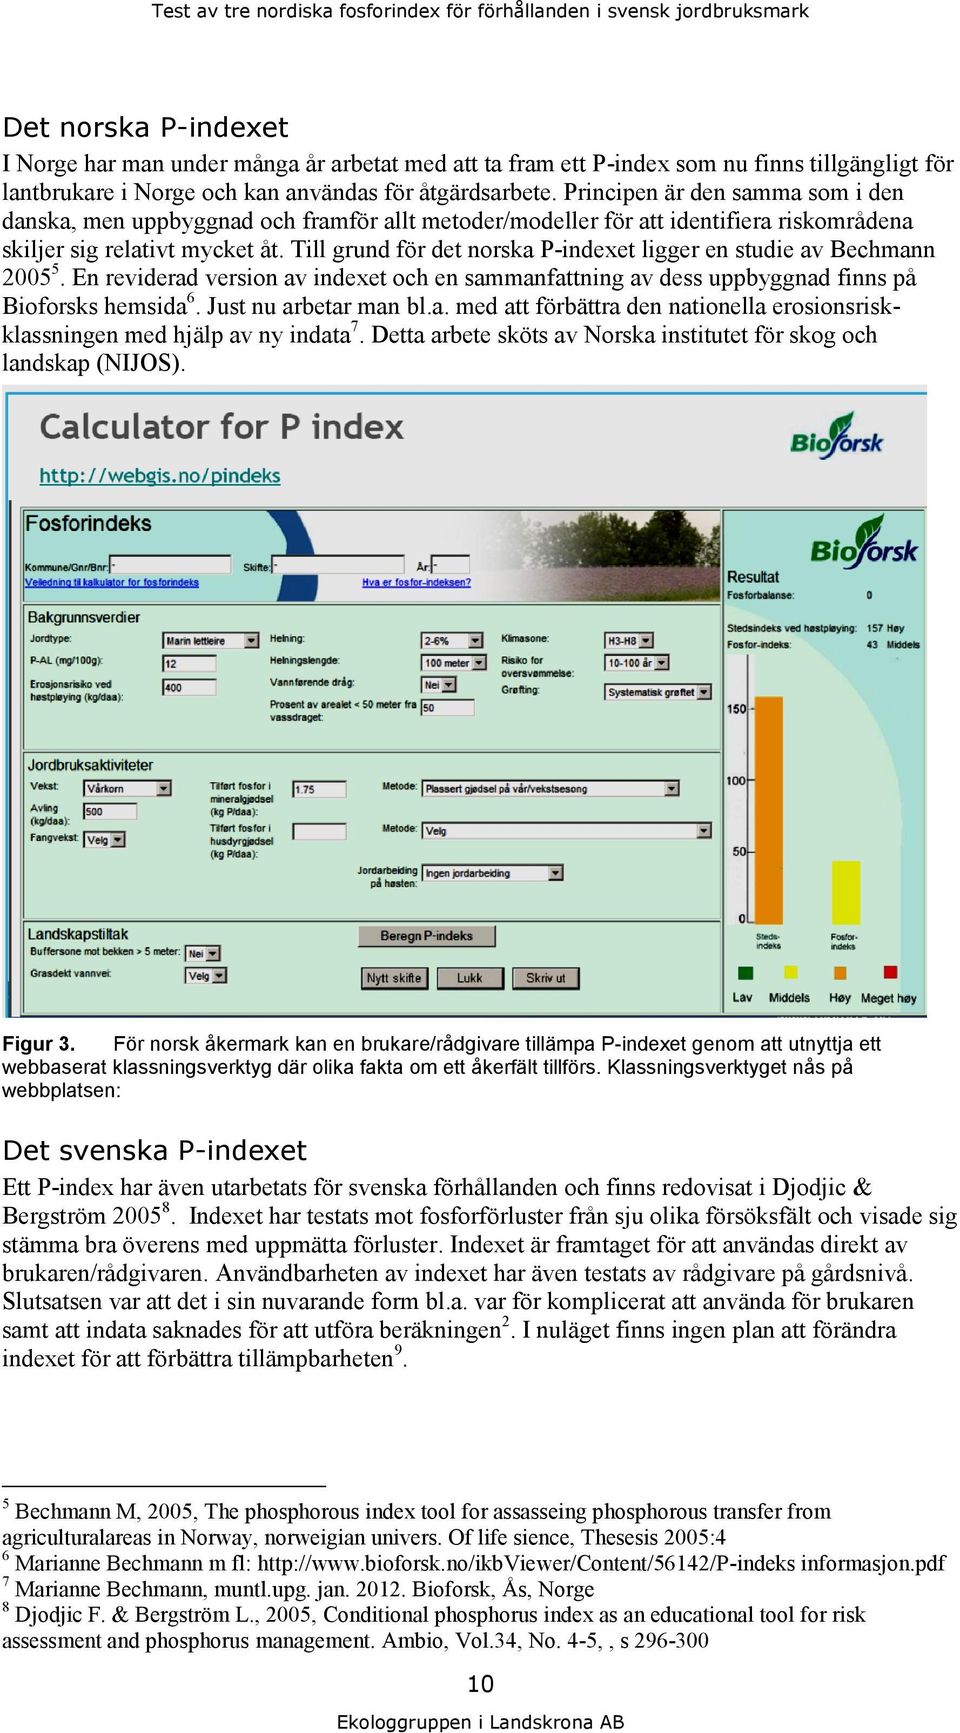 Till grund för det norska P-indexet ligger en studie av Bechmann 2005 5. En reviderad version av indexet och en sammanfattning av dess uppbyggnad finns på Bioforsks hemsida 6. Just nu arbetar man bl.